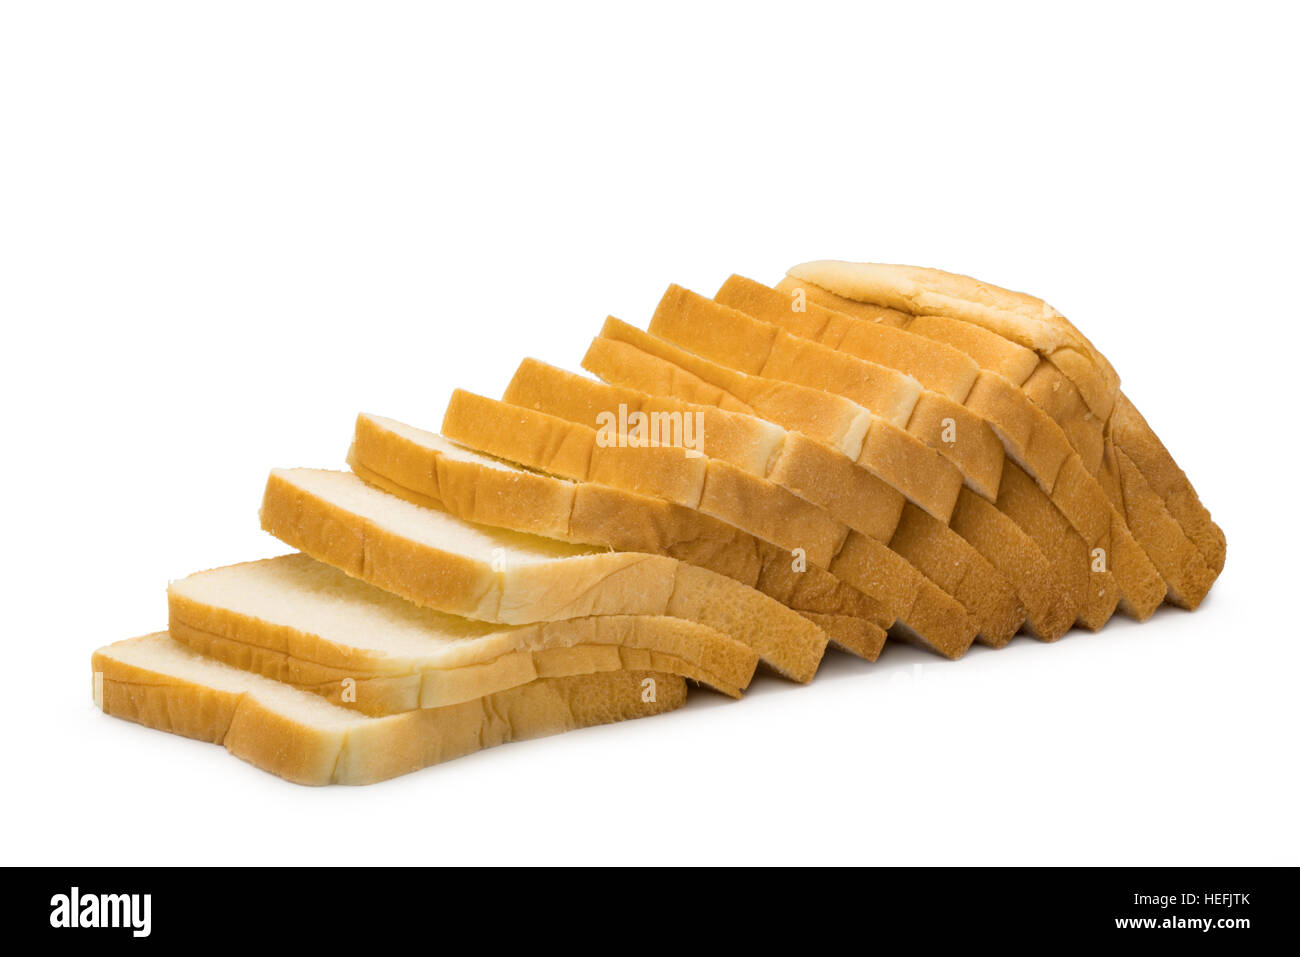 Filone di fette di pane fresco isolato su sfondo bianco Foto Stock